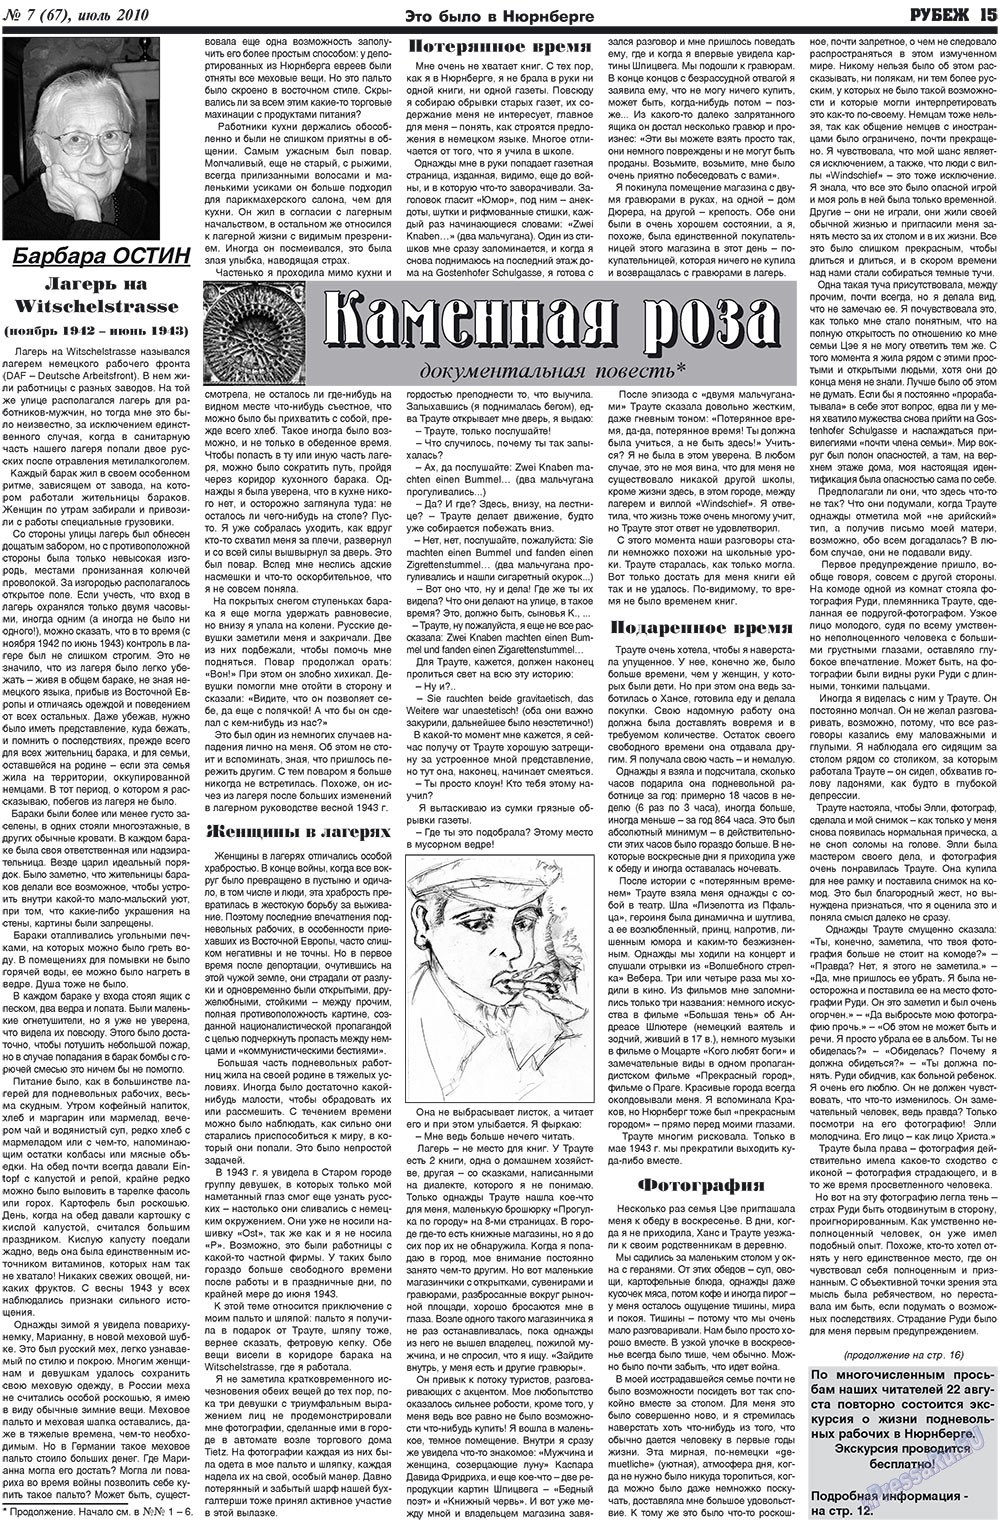 Рубеж (газета). 2010 год, номер 7, стр. 15